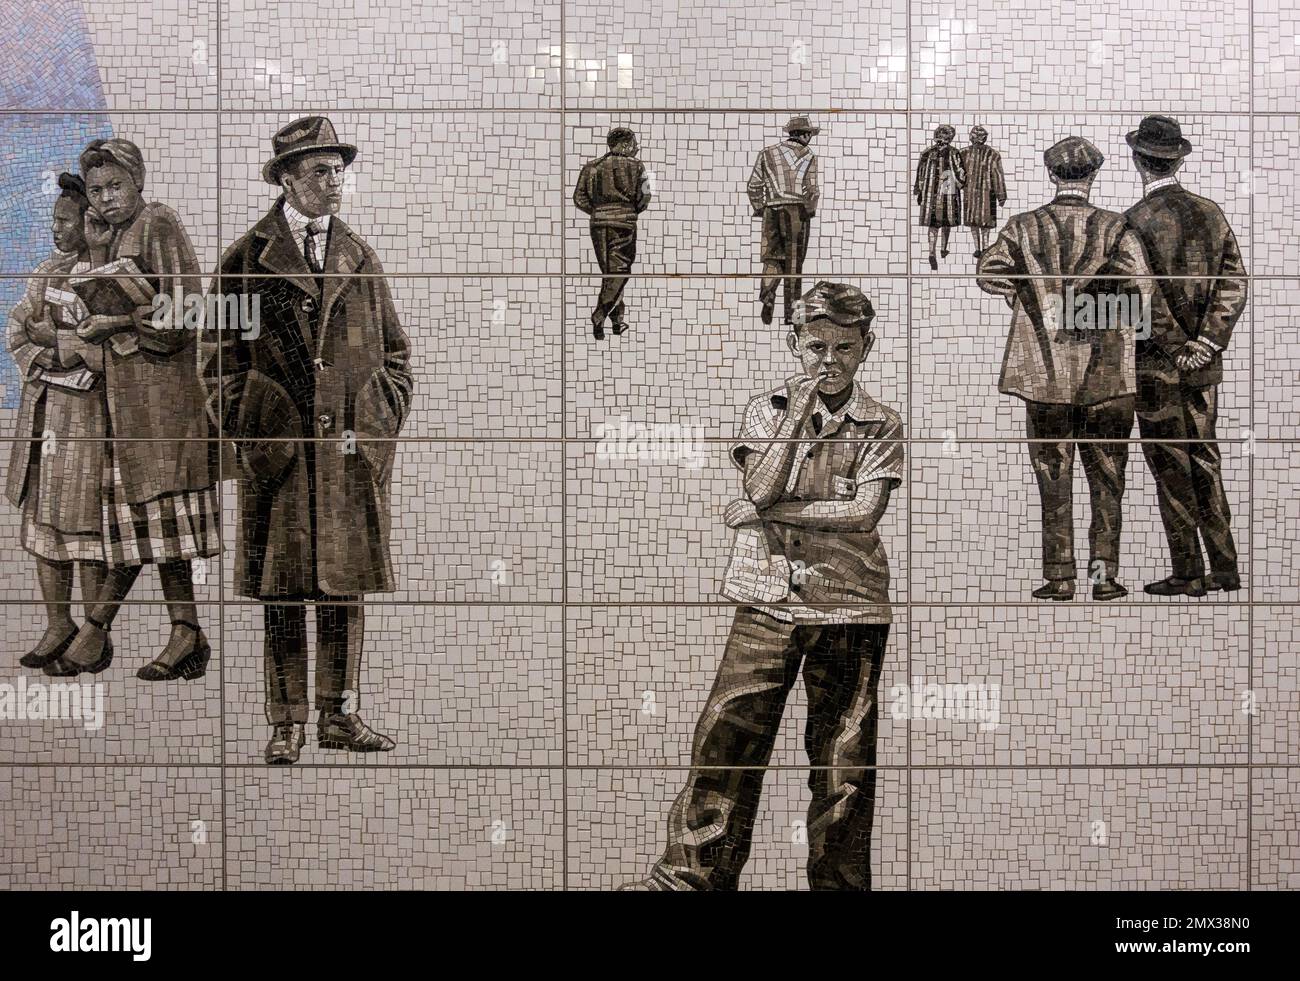 Mosaikfliesen von Menschen in der 63. Street Station an der F U-Bahnlinie im oberen Osten von Manhattan New York City Stockfoto